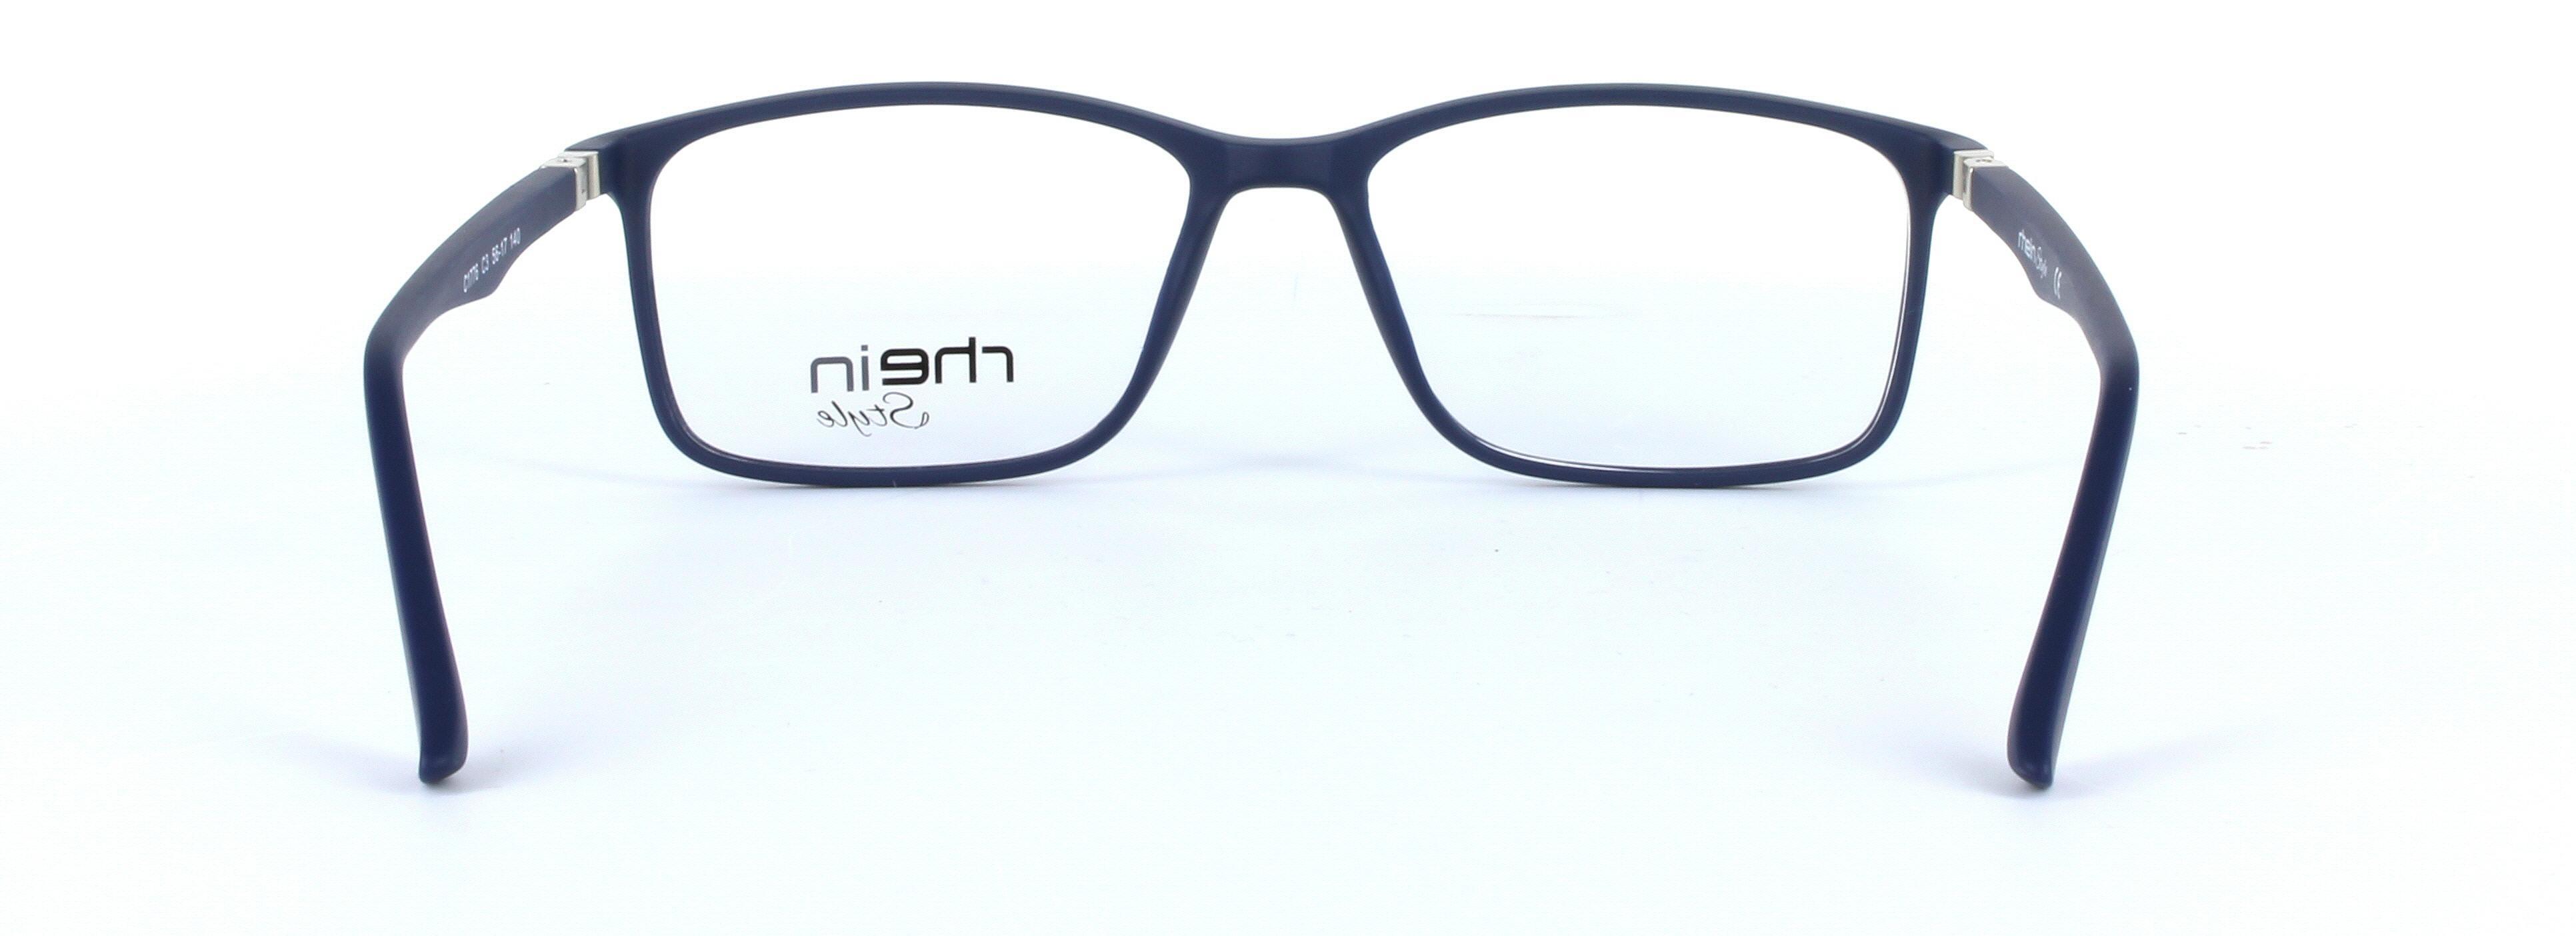 Franky Blue Full Rim Oval Rectangular Plastic Glasses - Image View 3